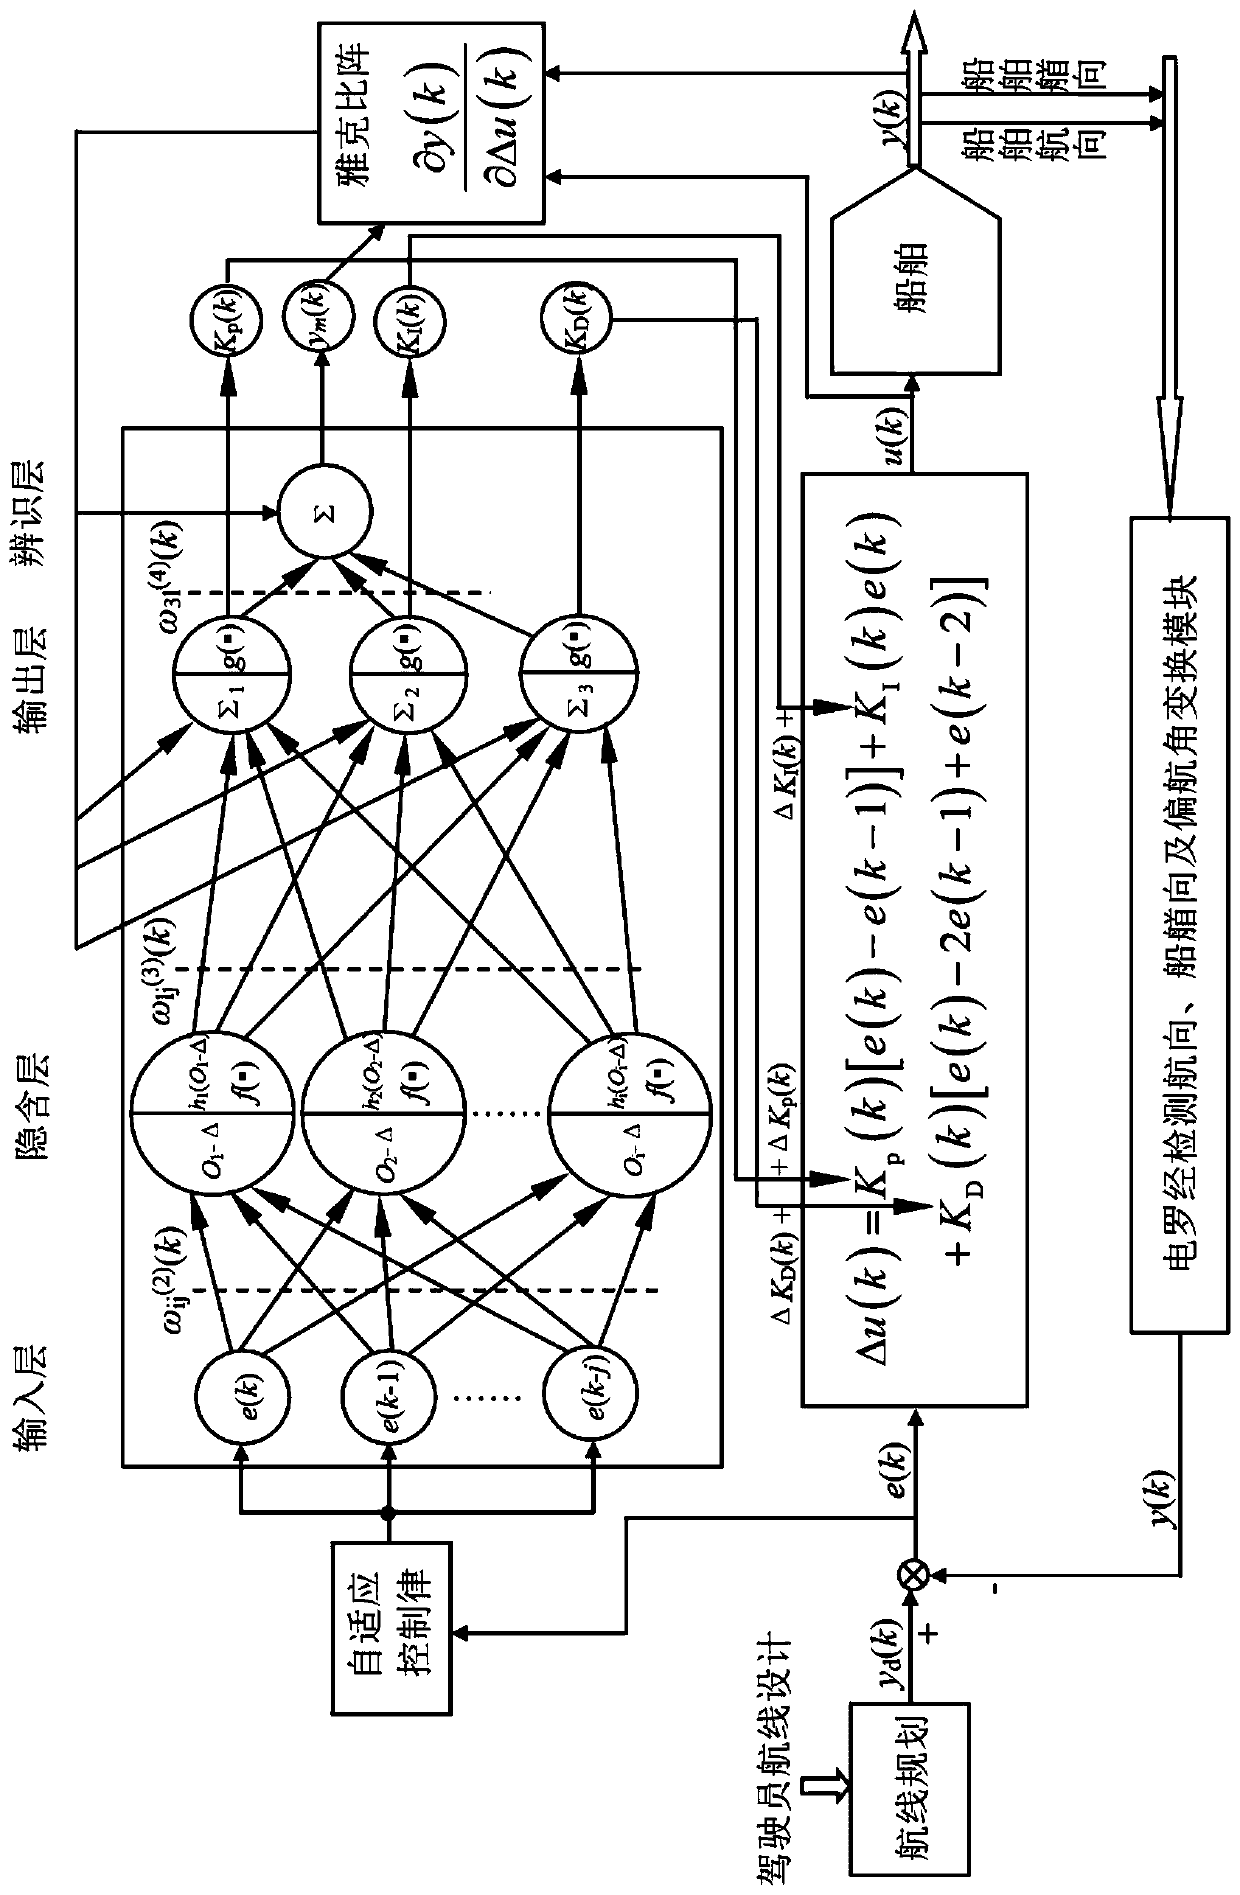 Ship autopilot composite neural network PID control method